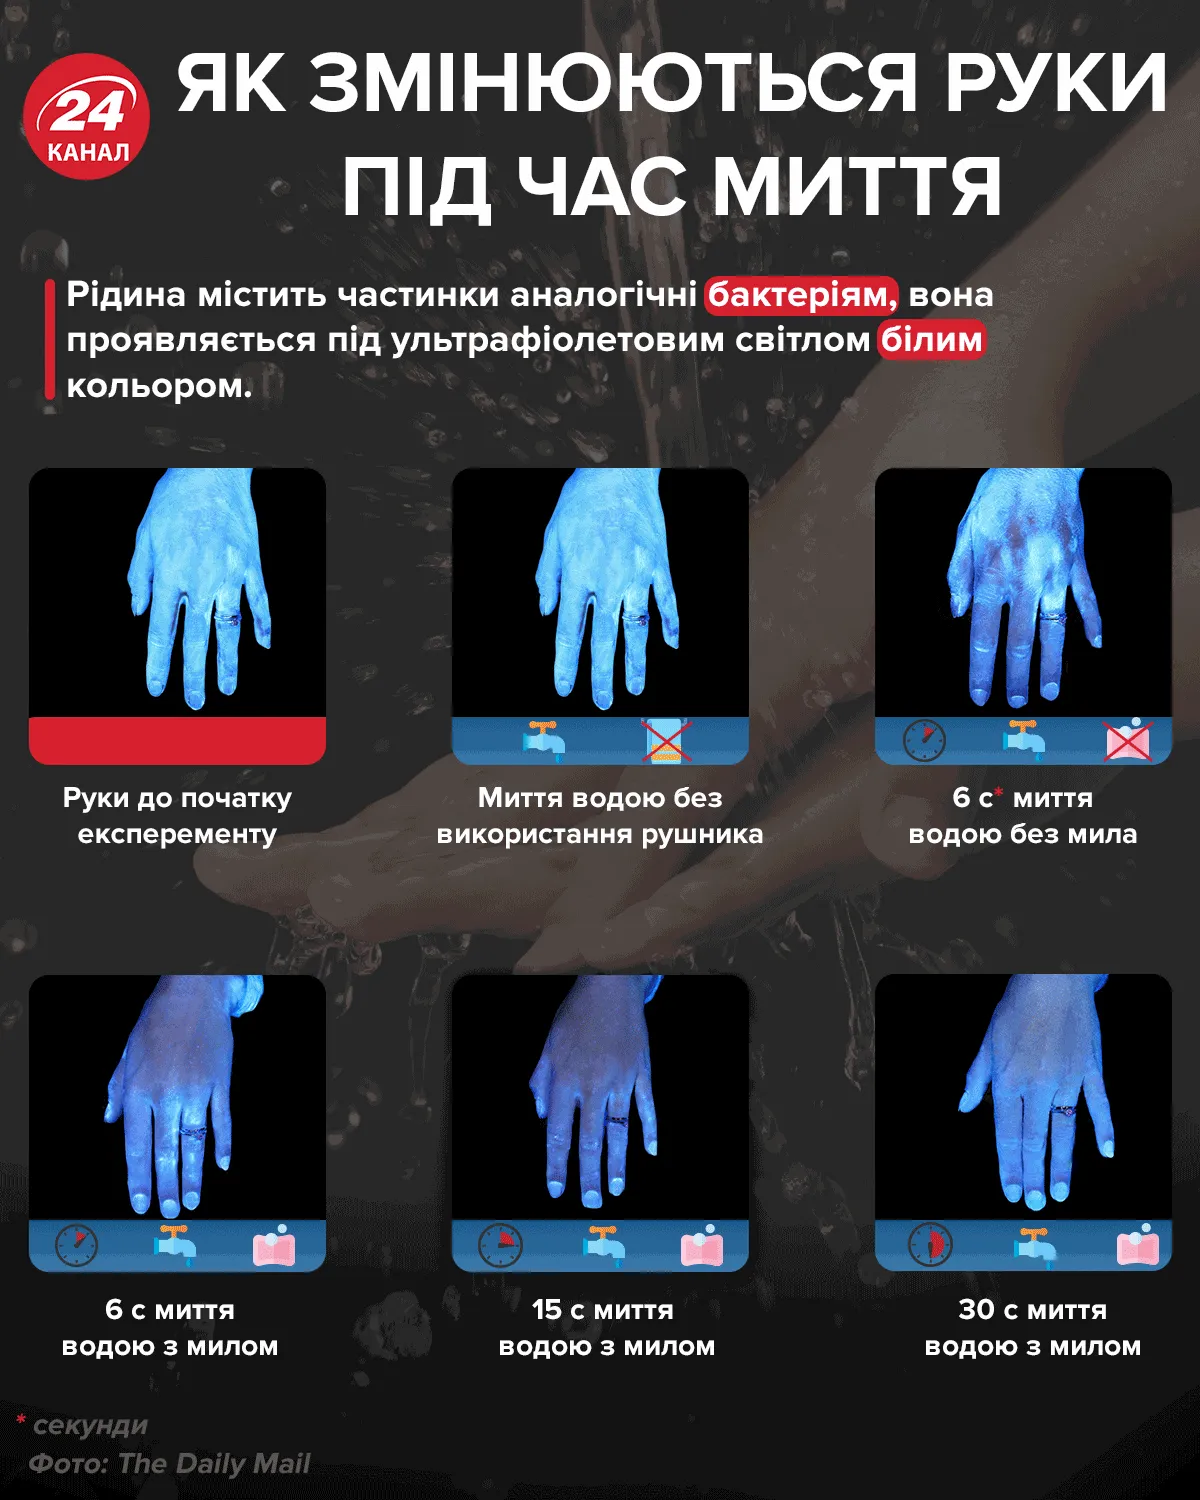 Как меняются руки во время мытья / Инфографика 24 канала